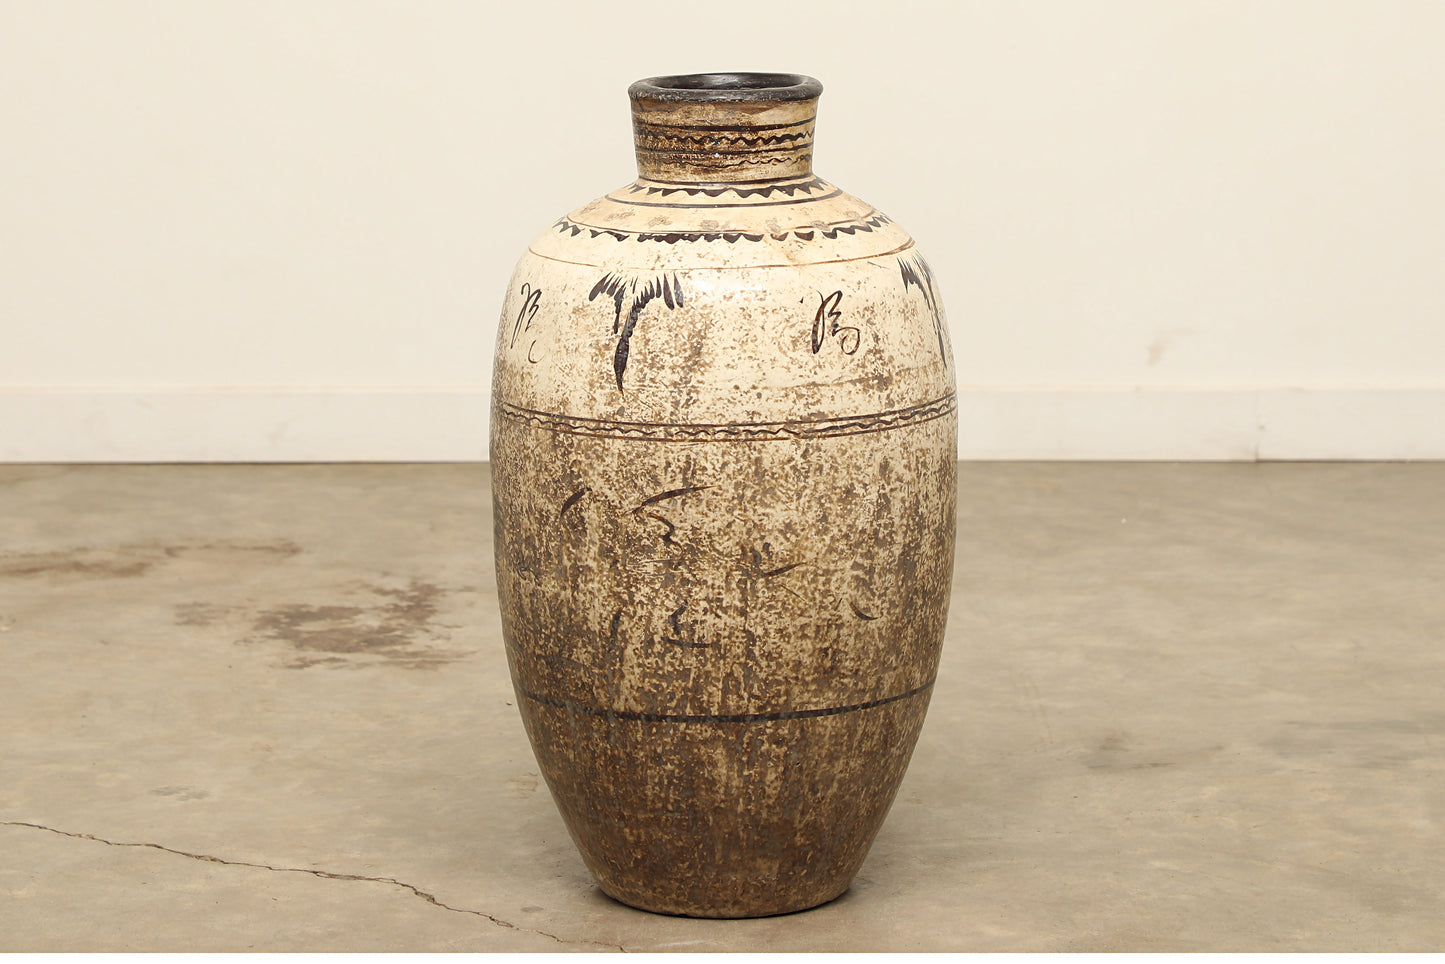 (GAT035) Vintage Shanxi Wine Jar - Circa 1824 (15x15x29)